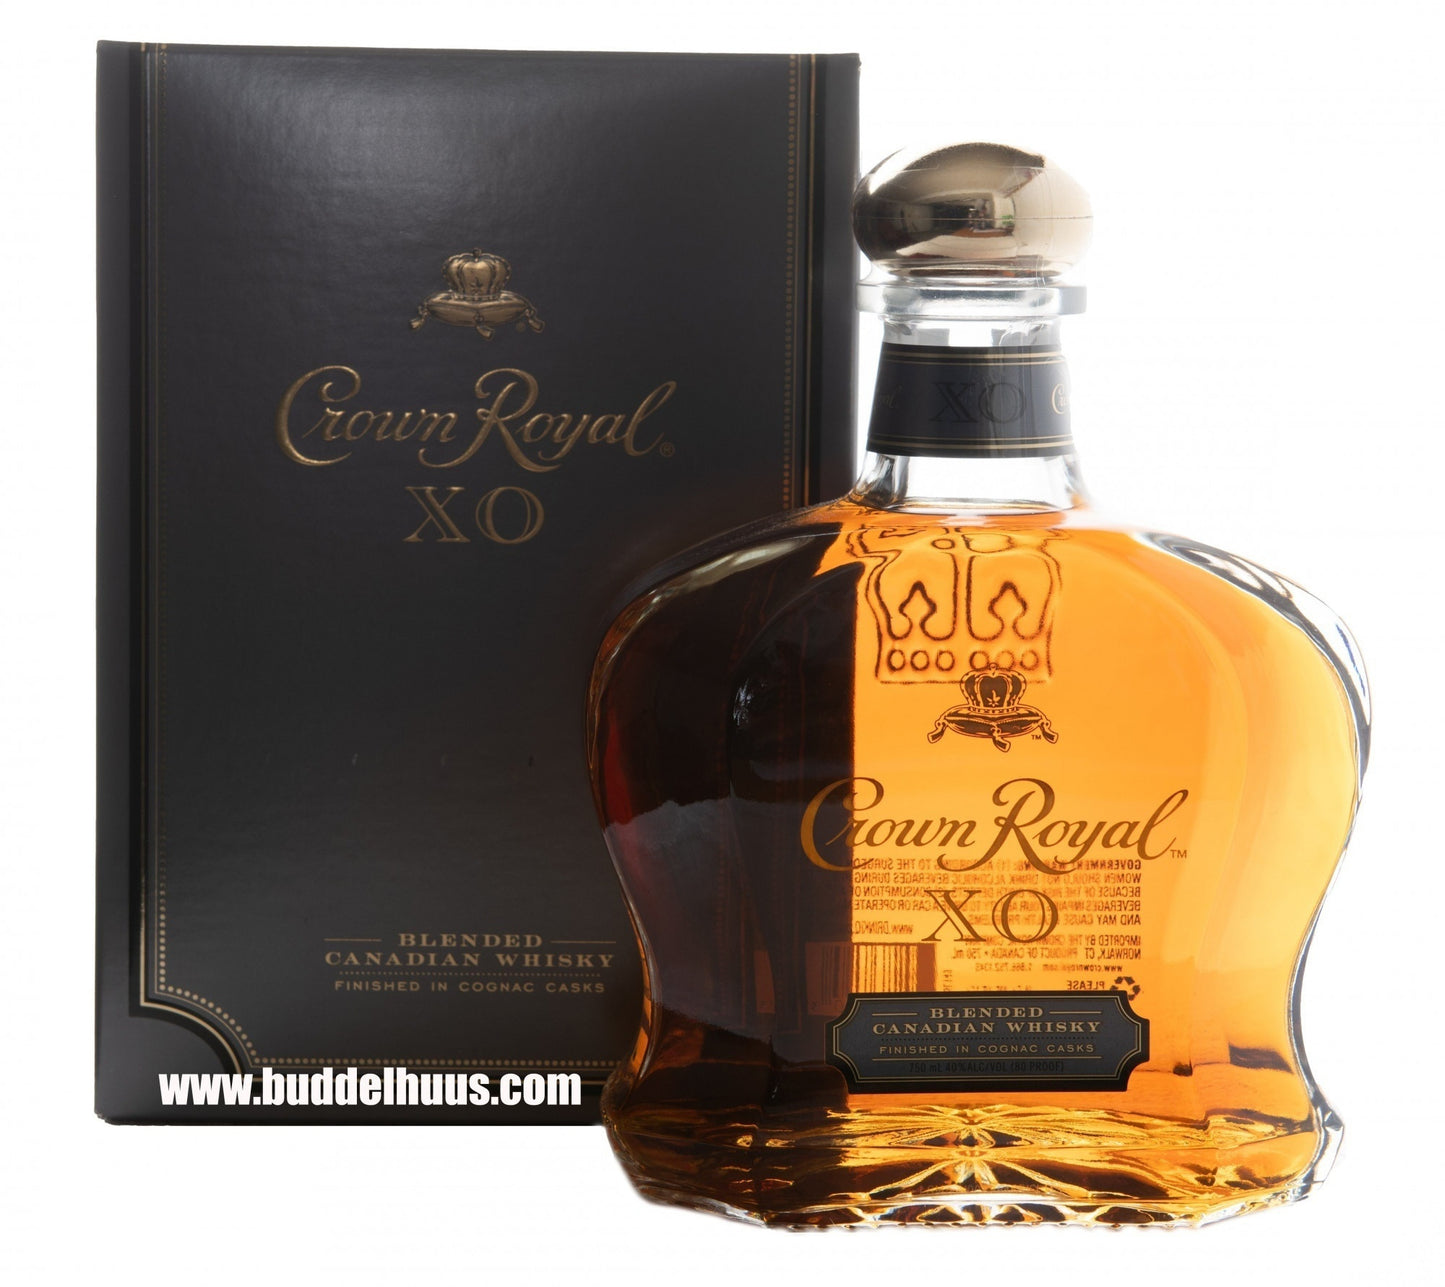 Crown Royal XO Cognac Cask